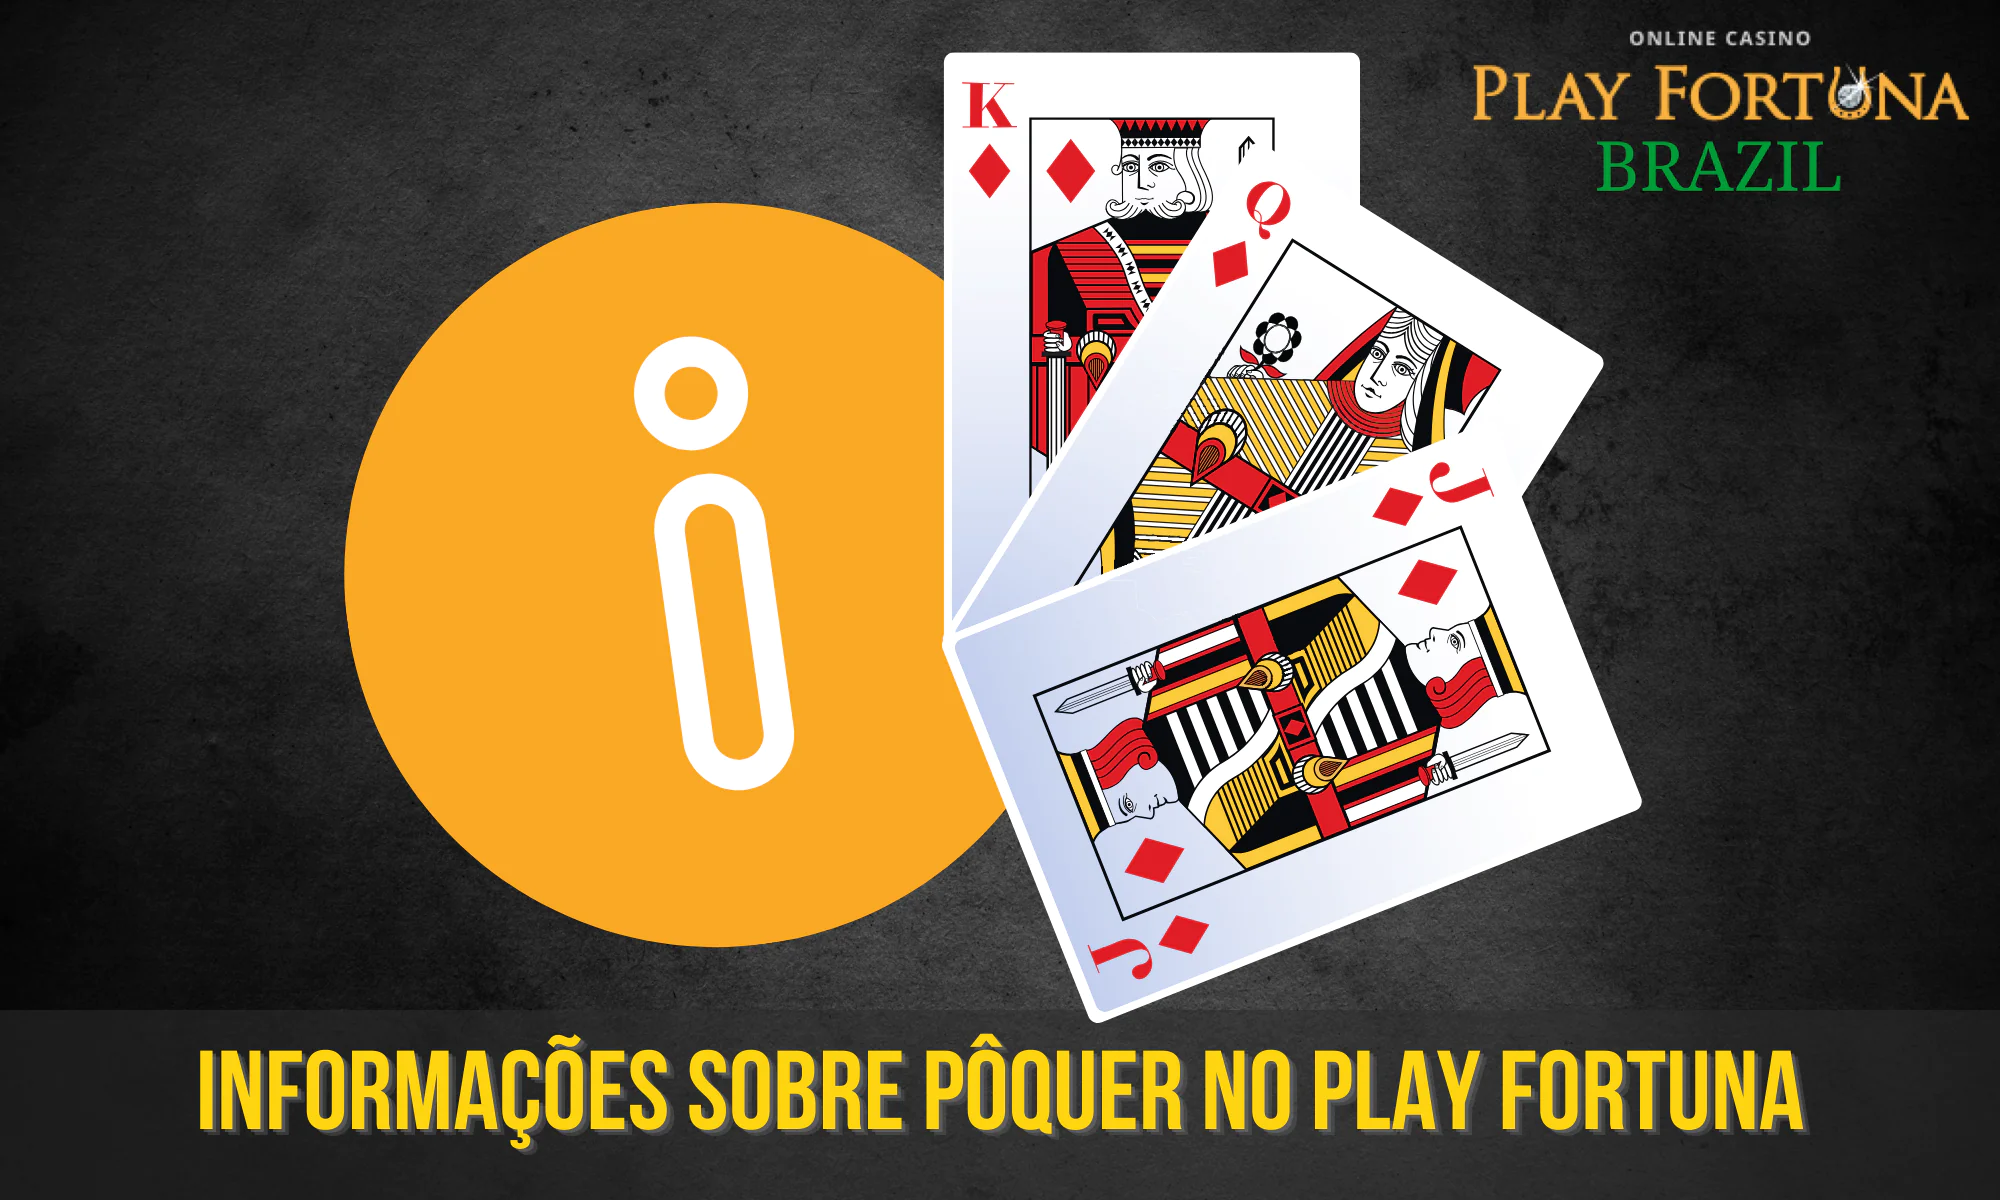 Informações detalhadas sobre pôquer no site da Play Fortuna